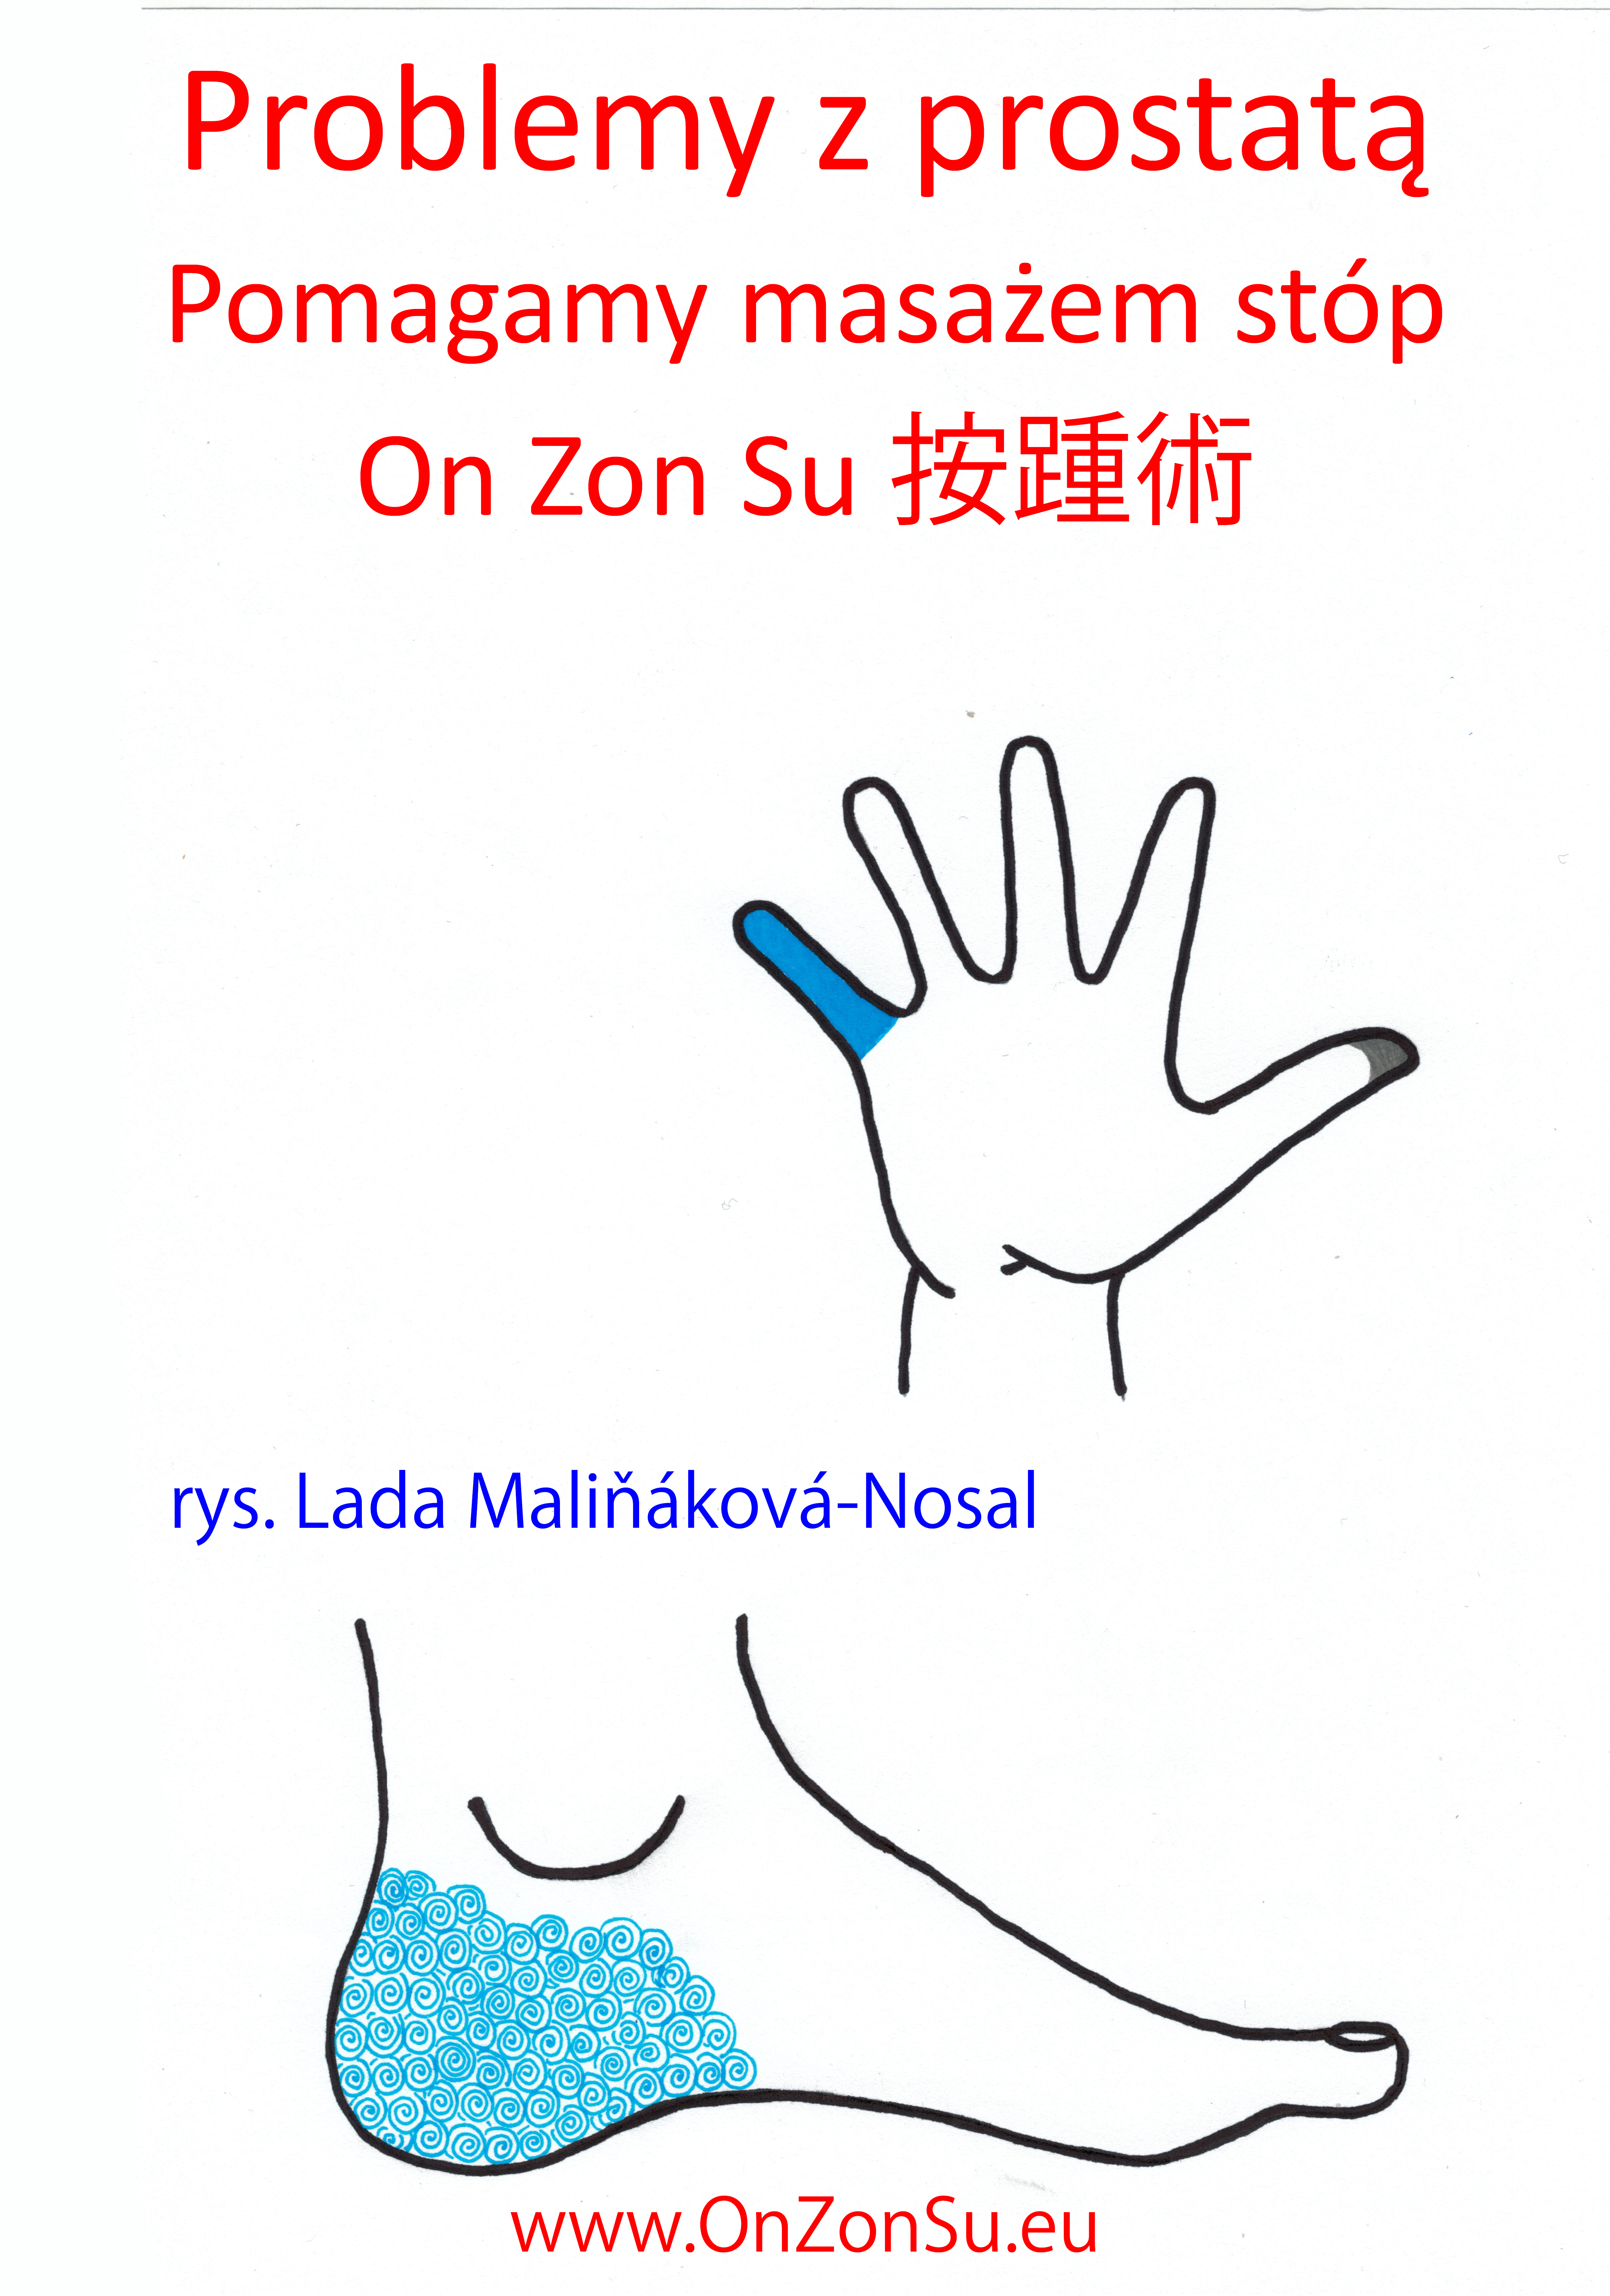 Kurs masażu stóp On Zon Su, Szkolenia refleksologii stóp - Problemy z prostatą MEM.jpg